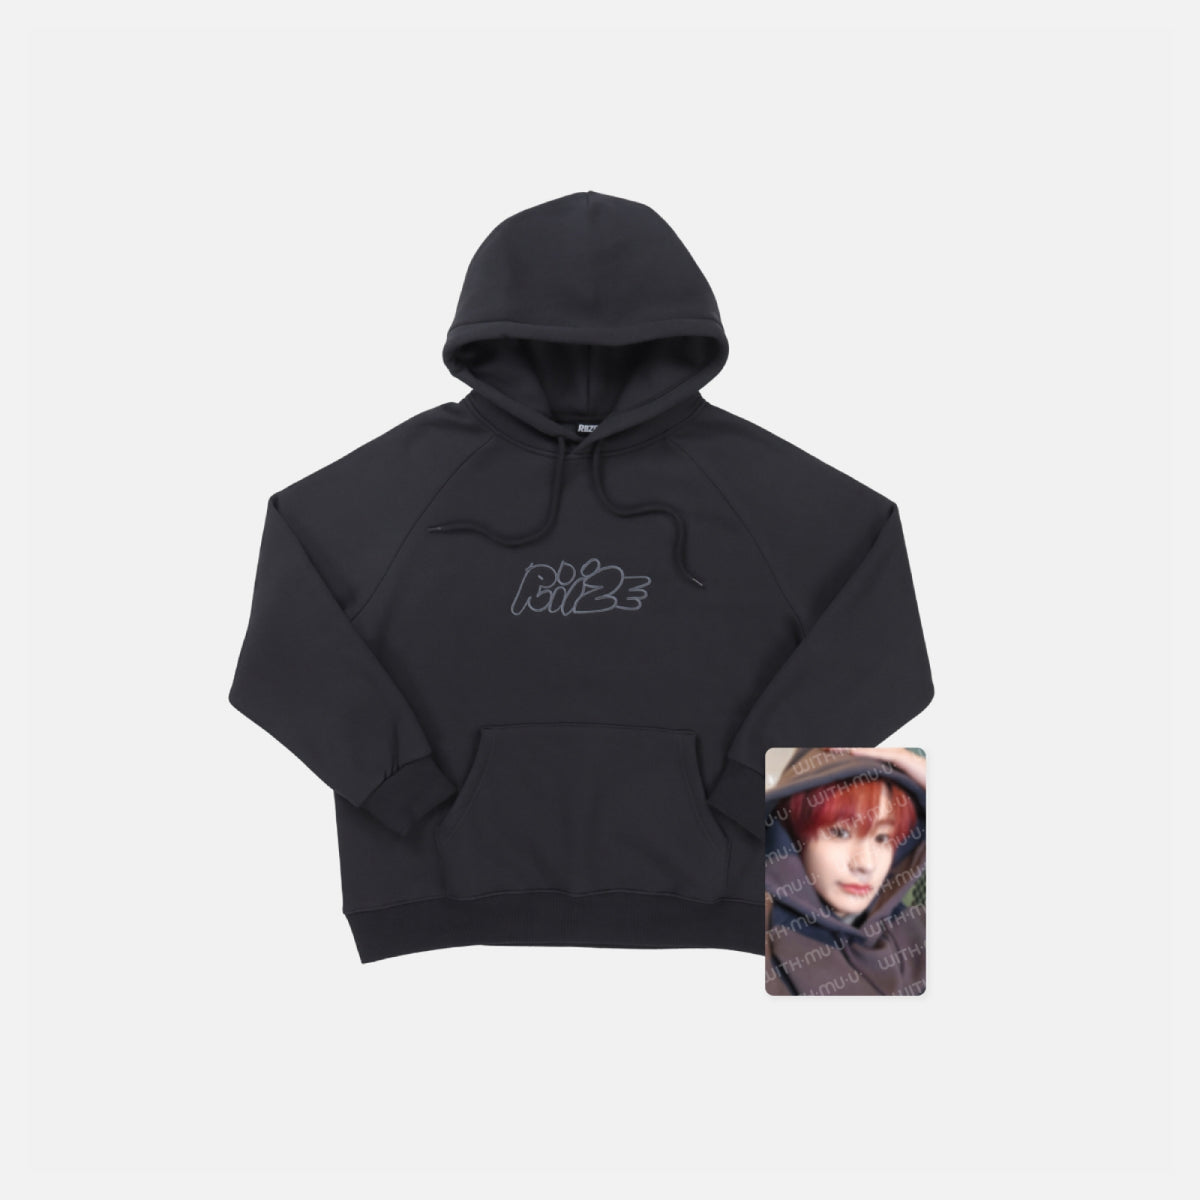 Selling med UV hoodie : r/Rezz